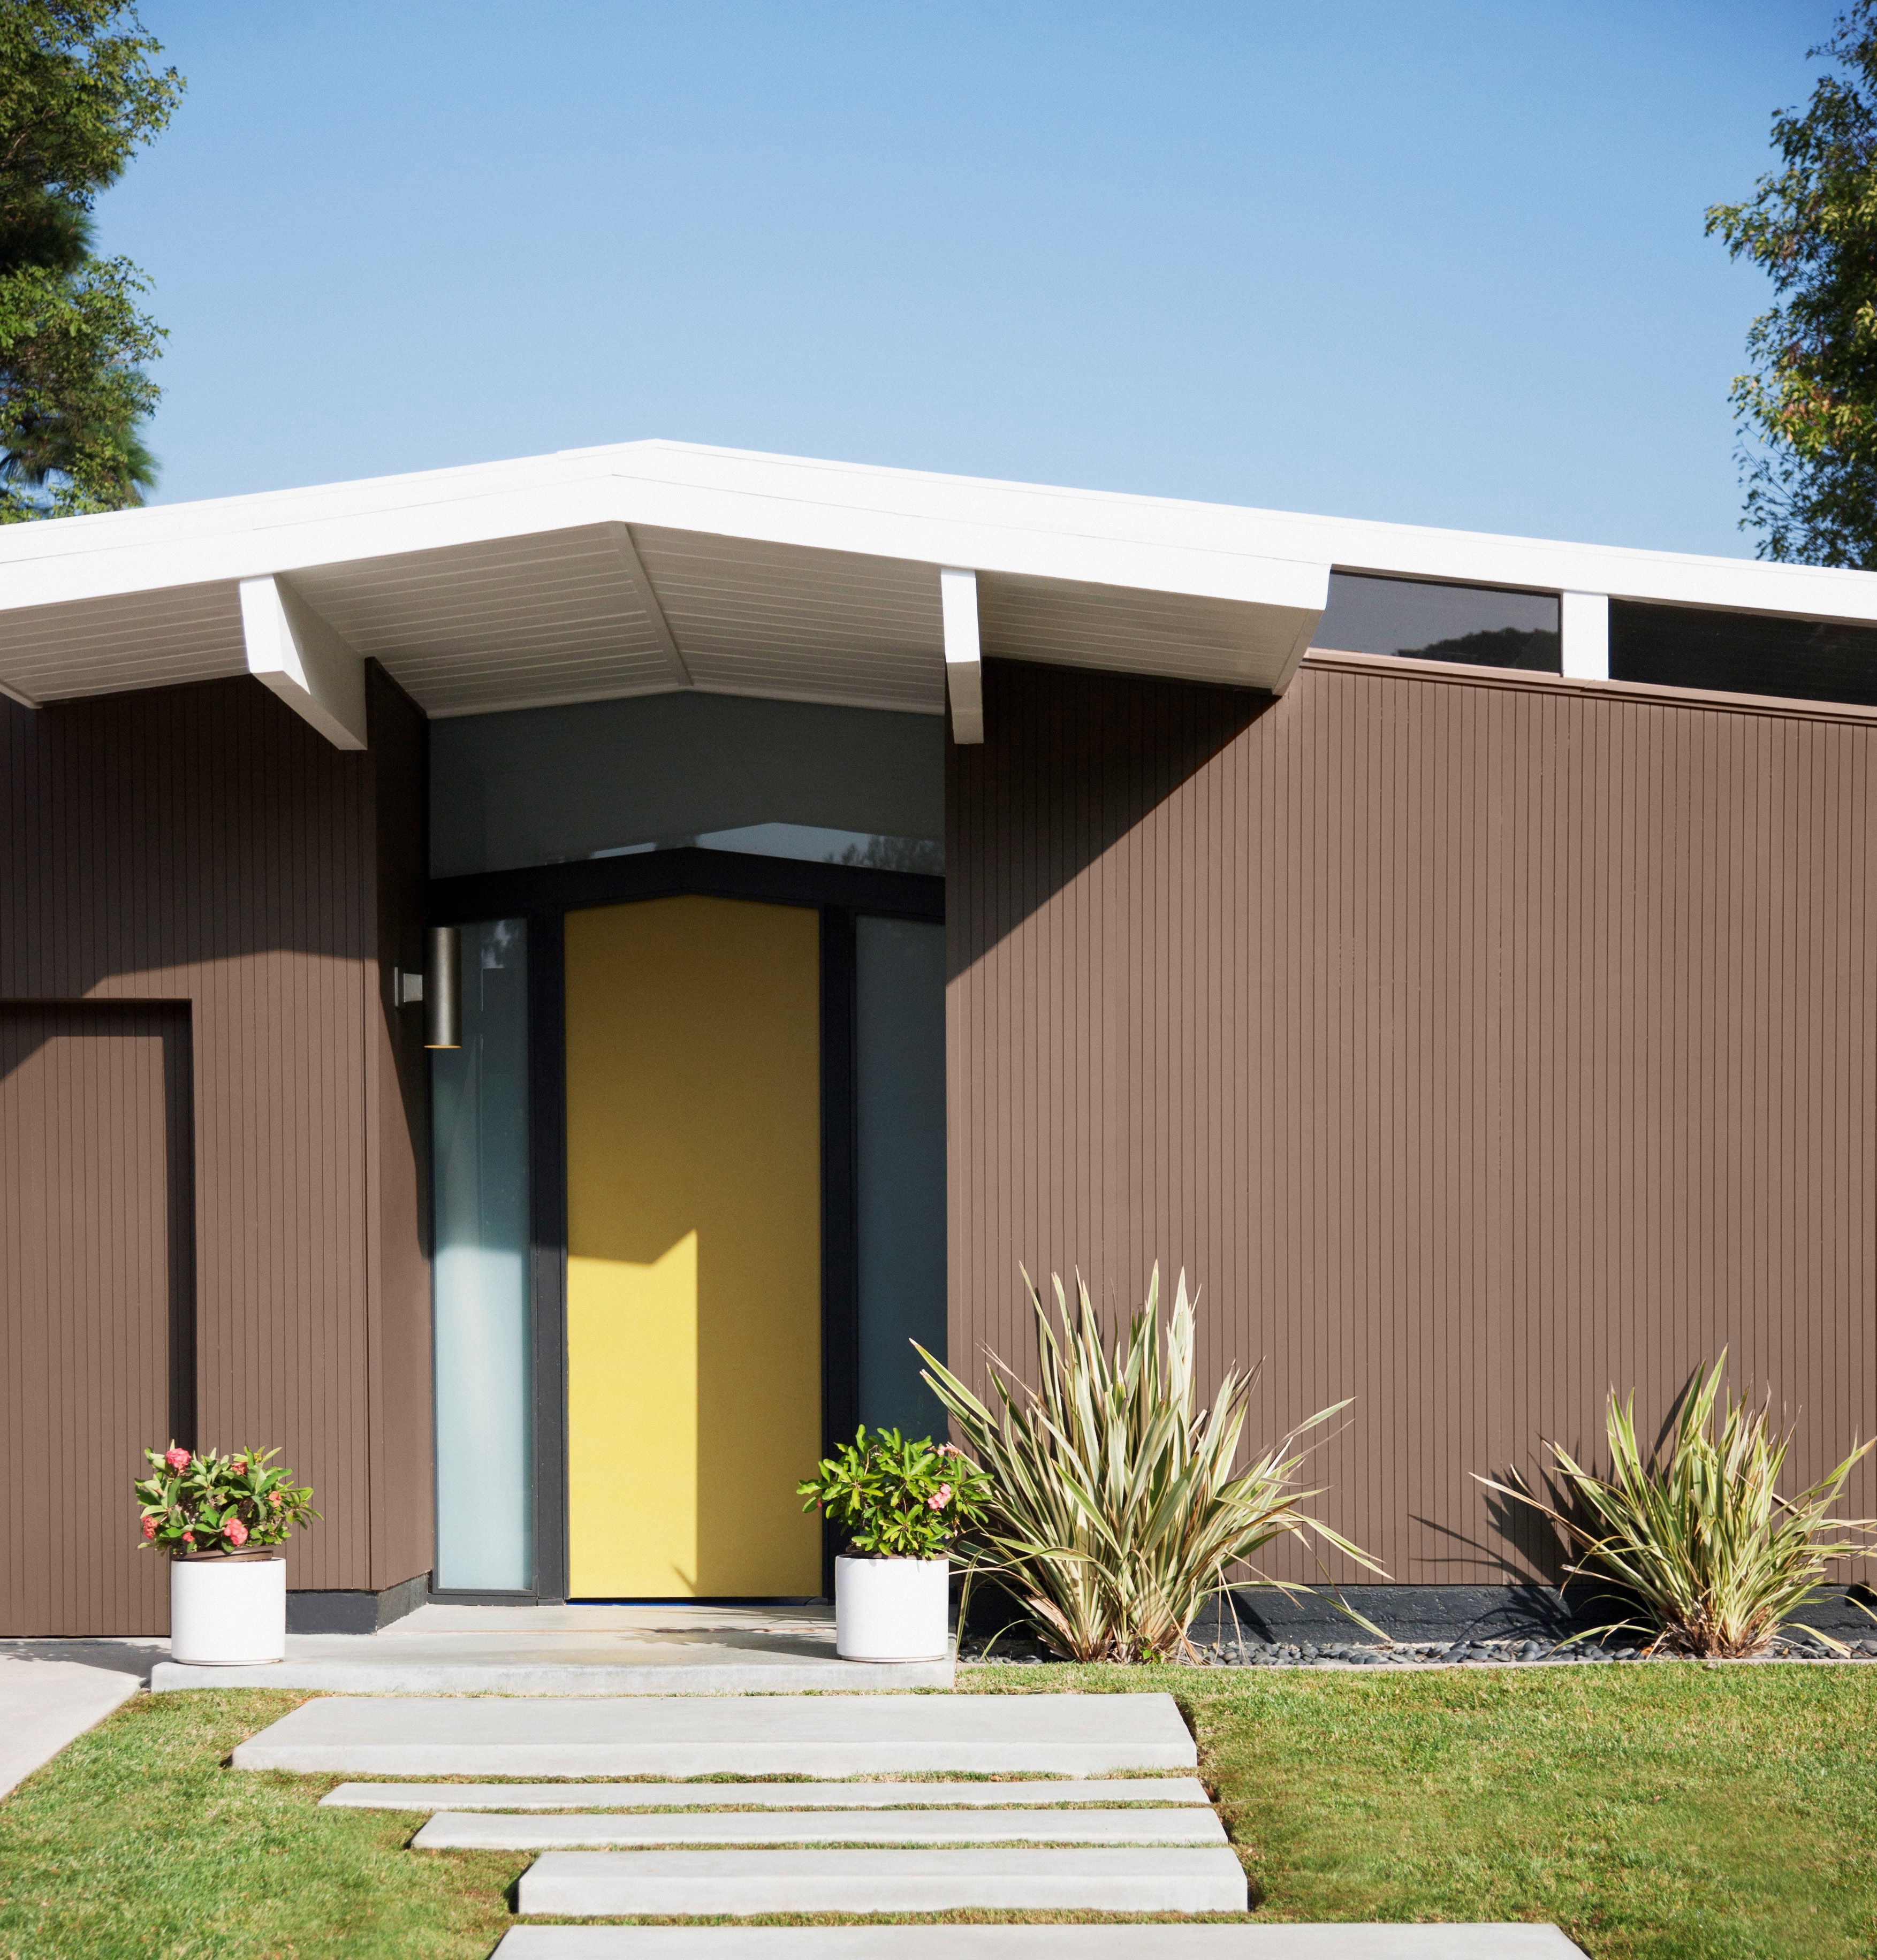 Une maison des années '50 dont le corps de la maison est peinturé en un brun stabilisant appelé Mustang sauvage. La porte d'entrée est peinte dans une couleur jaune vive et gaie. Aménagement paysager bien entretenu.